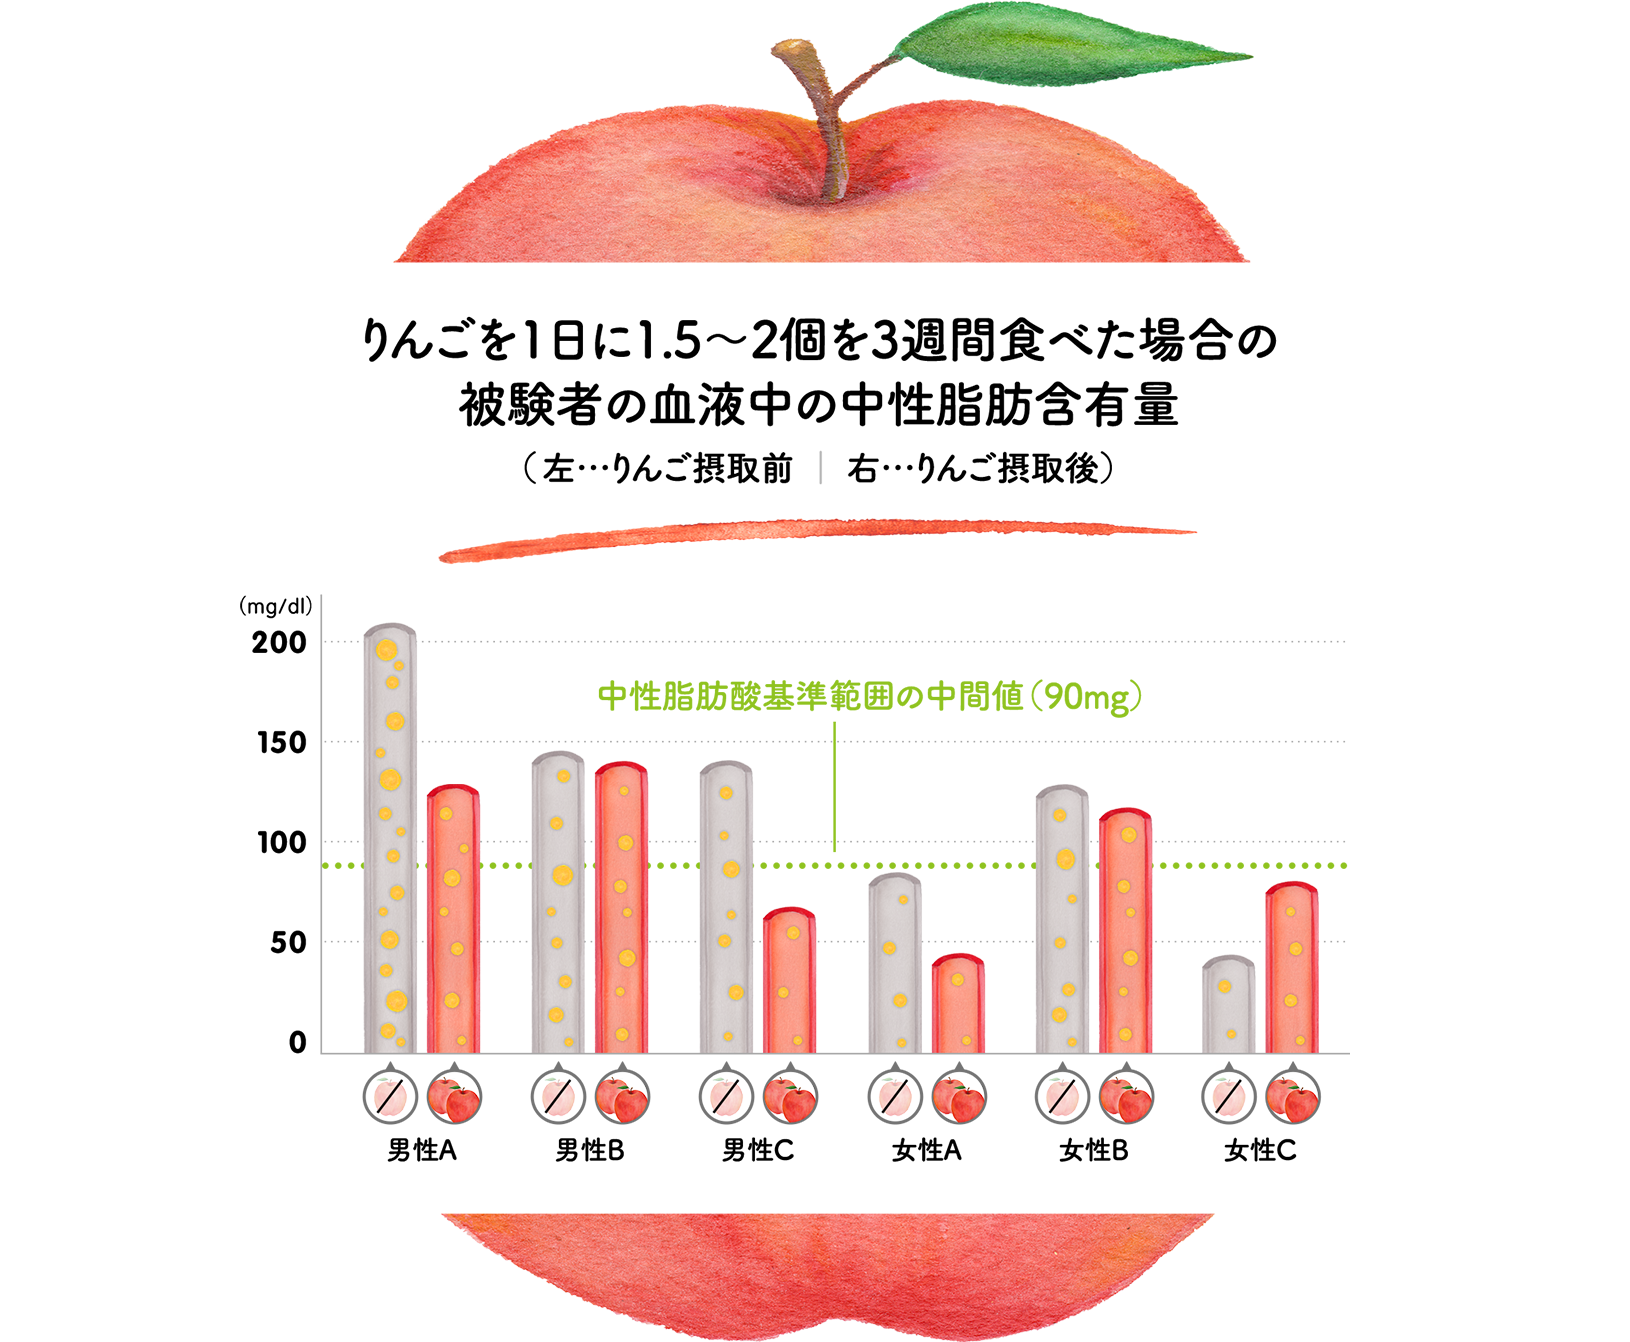 りんごを1日に1.5〜2個を3週間食べた場合の被験者の血液中の中性脂肪含有量